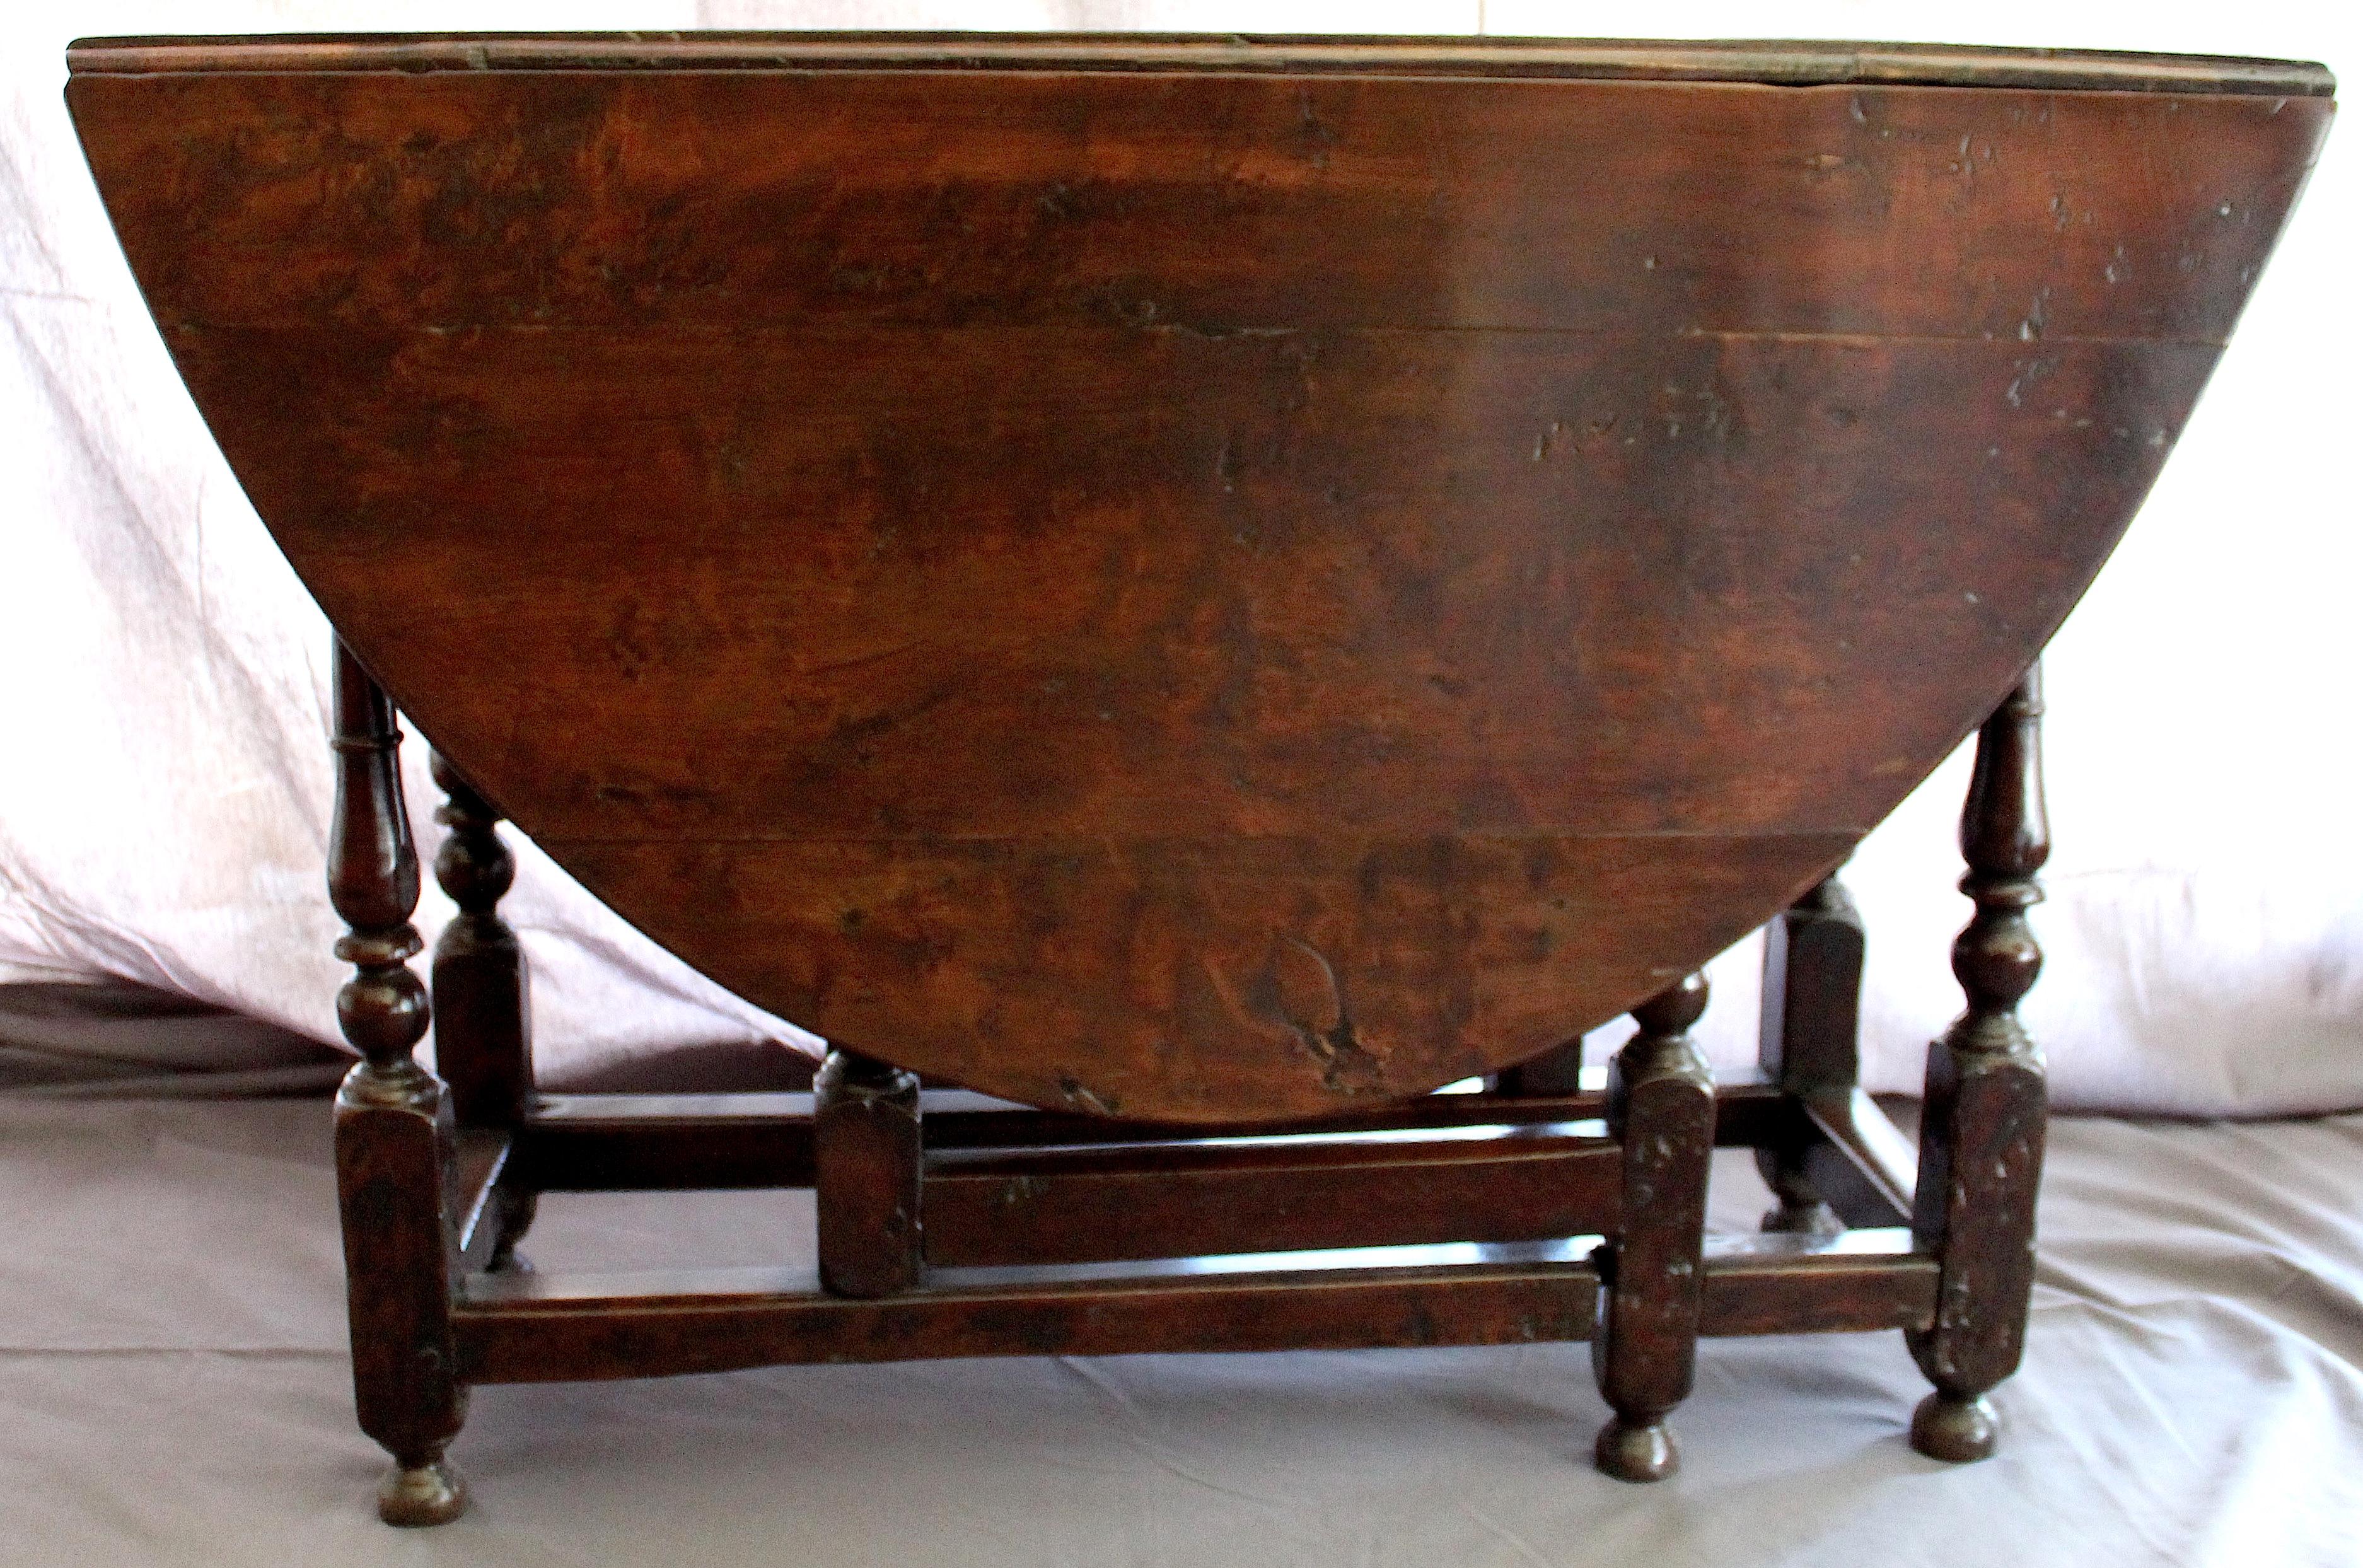 Table à pattes de haine en noyer anglais circa 1685
Un bel exemple de meuble anglais ancien avec une belle couleur, un beau vieillissement et avec un panneau central, deux feuilles tombantes et des pieds pliants sculptés en dessous.